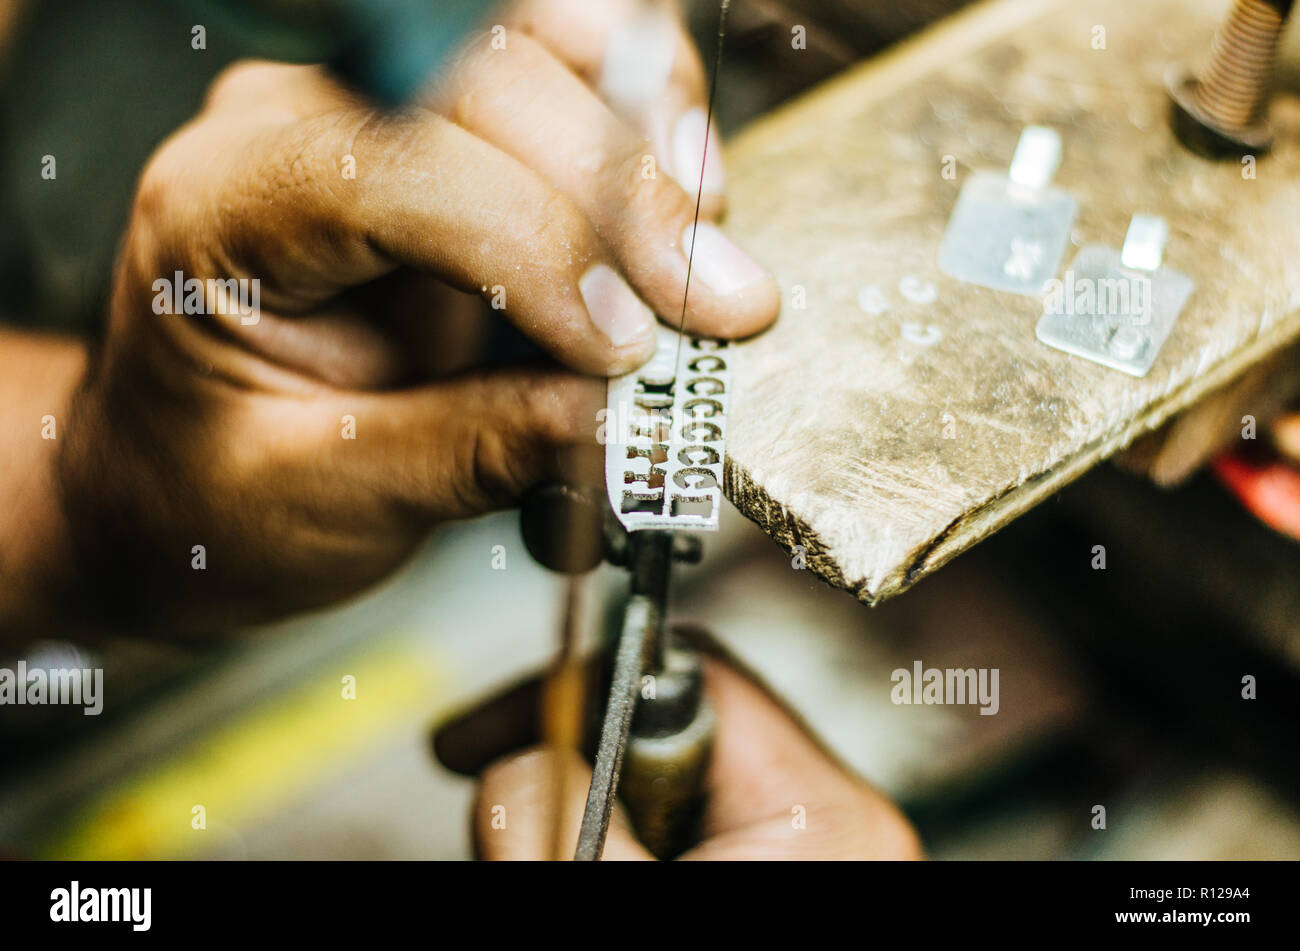 Hände Goldschmiedearbeiten des Menschen auf ein Stück Silber mit einer Metallsäge auf dem Arbeitstisch, Nahaufnahme, ausgewählte konzentrieren, enge Tiefenschärfe Stockfoto